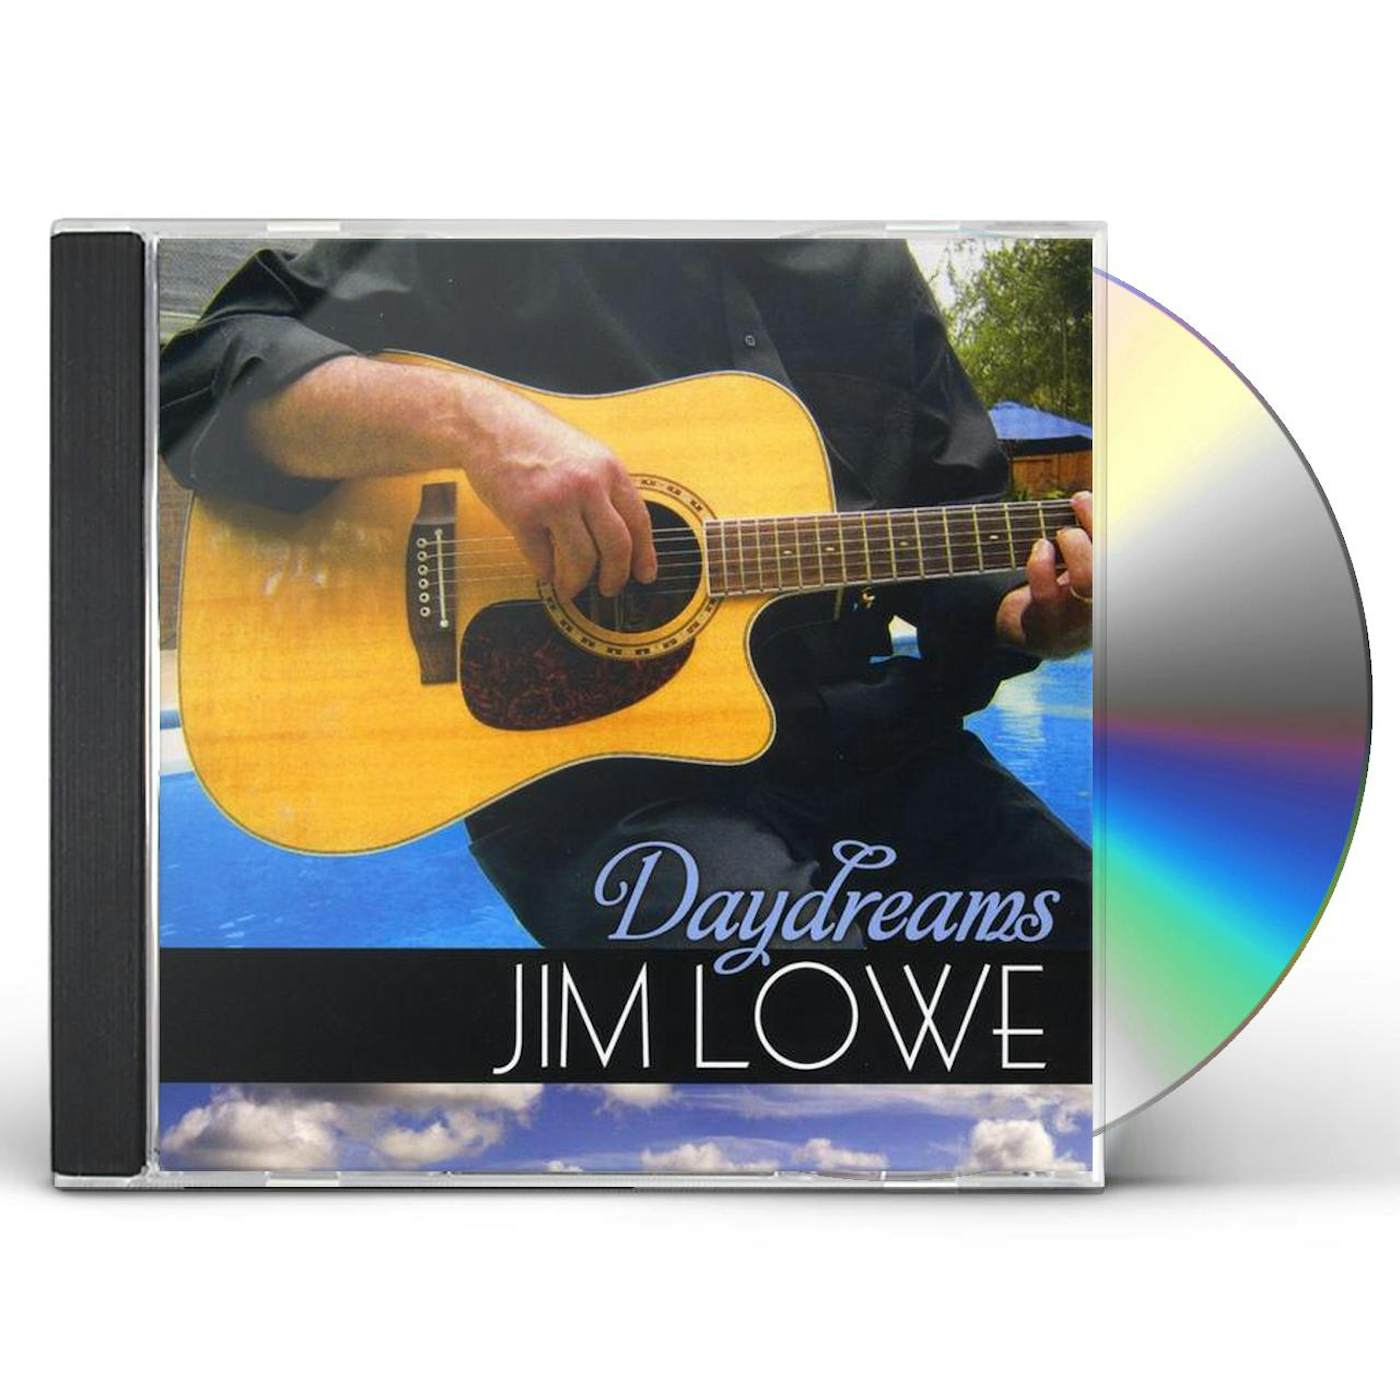 Jim Lowe DAY DREAMS CD